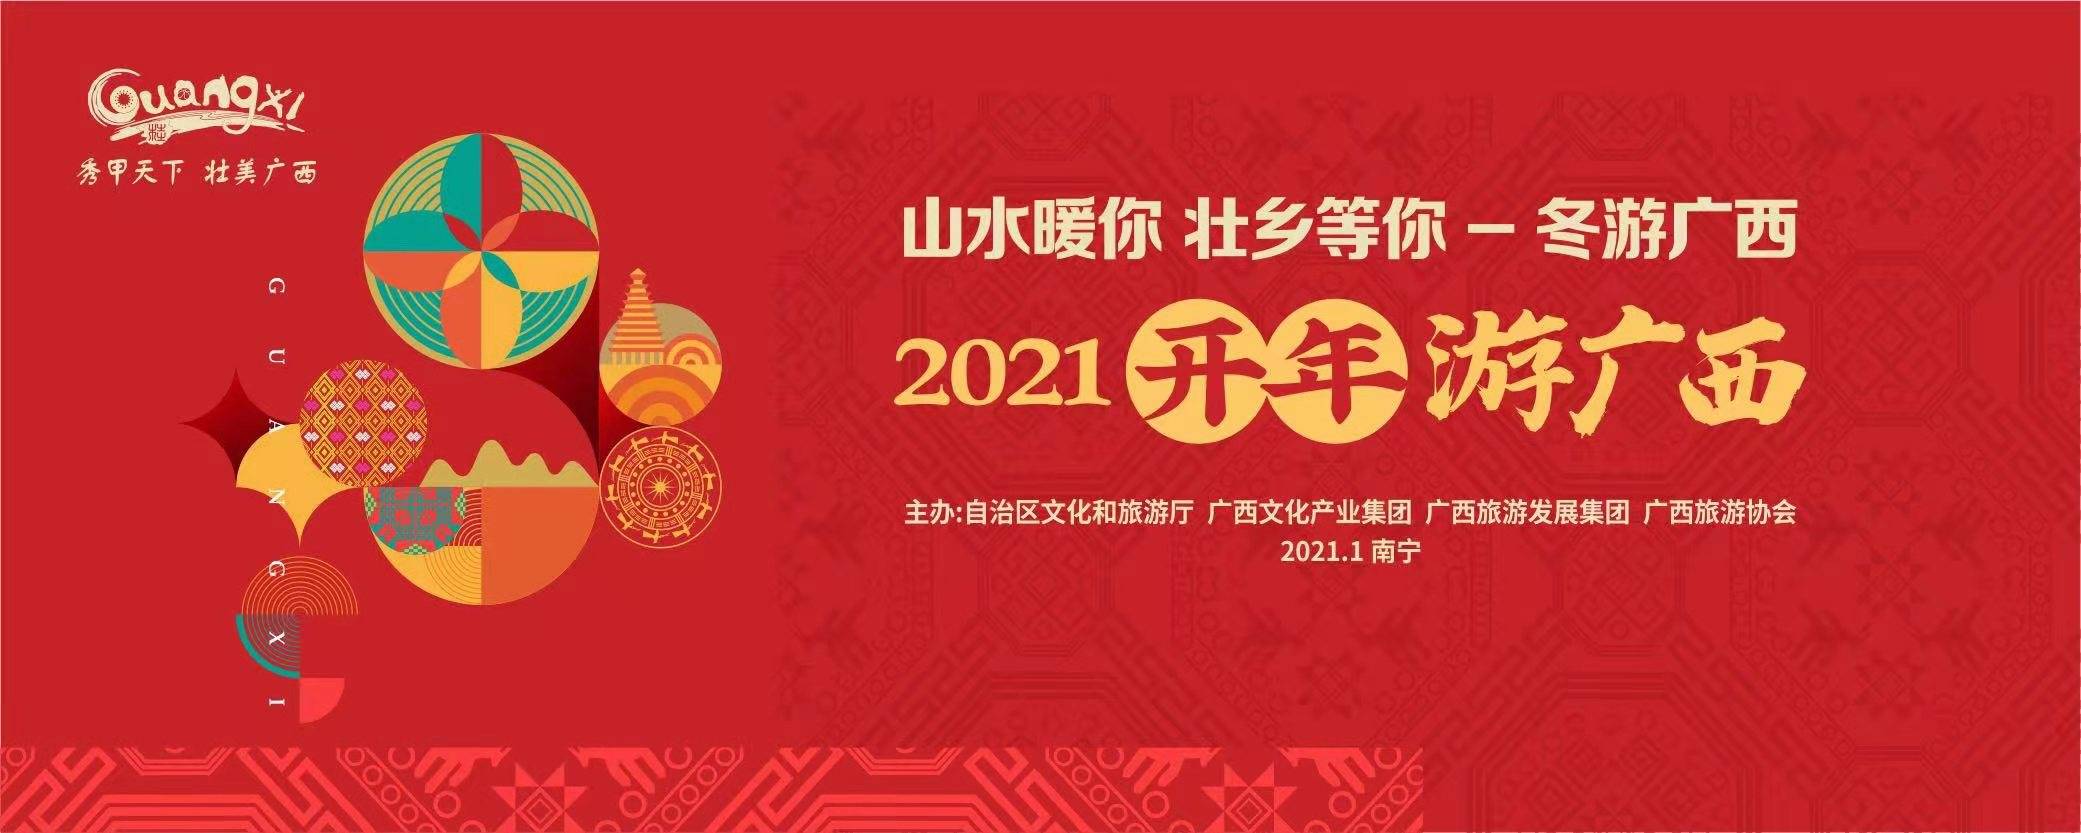 2021“开年游广西”即将启动，带你“惠”游广西